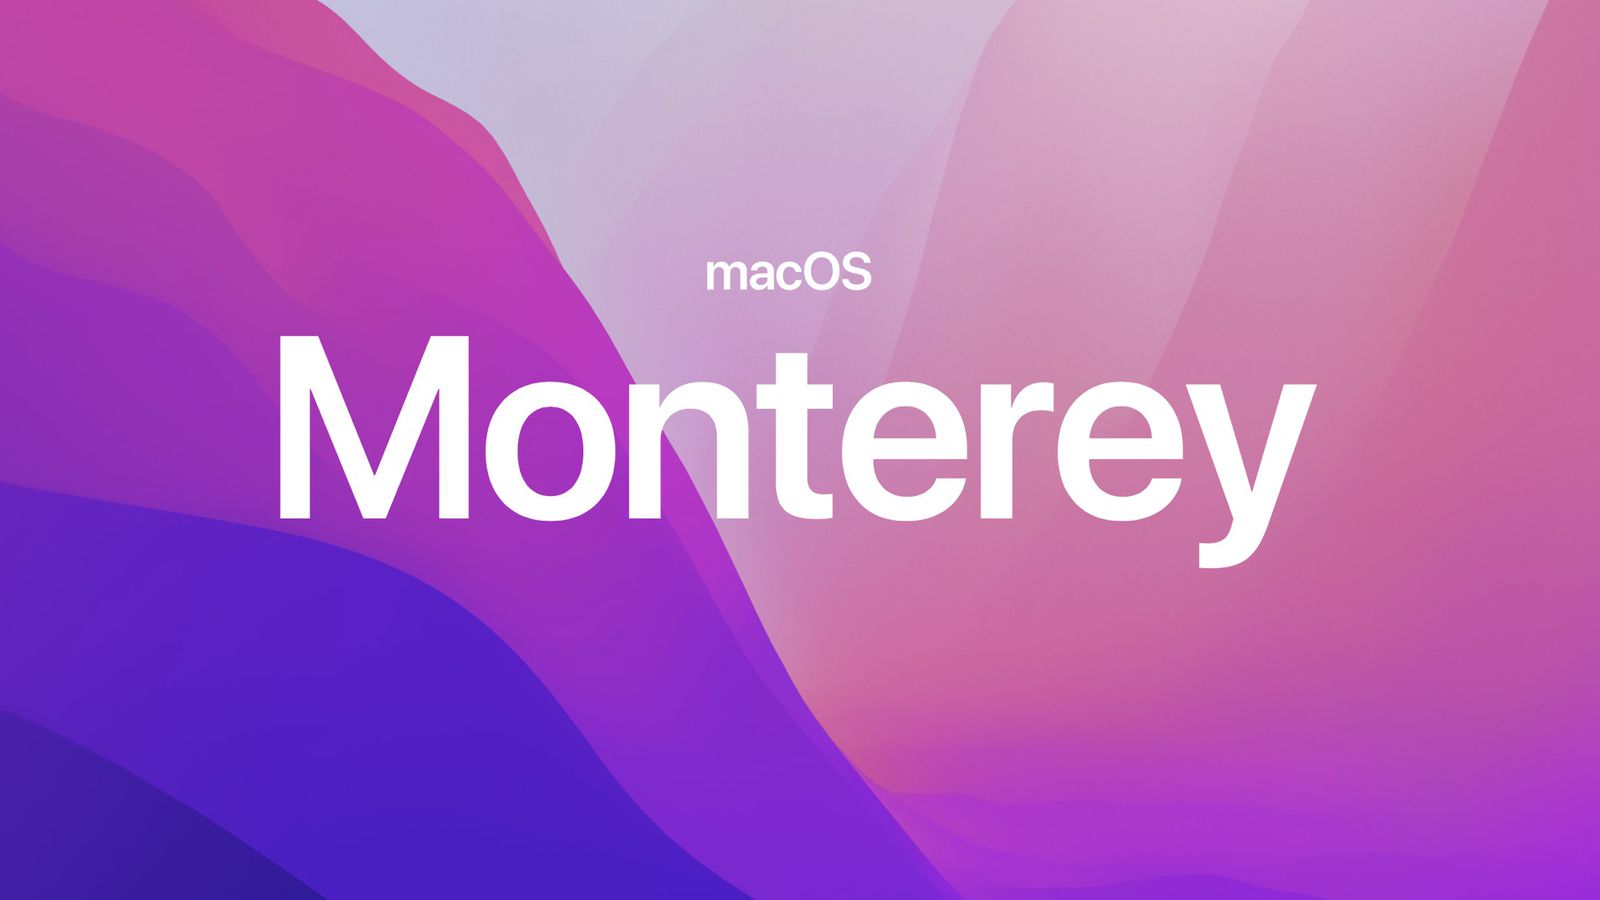 New macOS Monterey